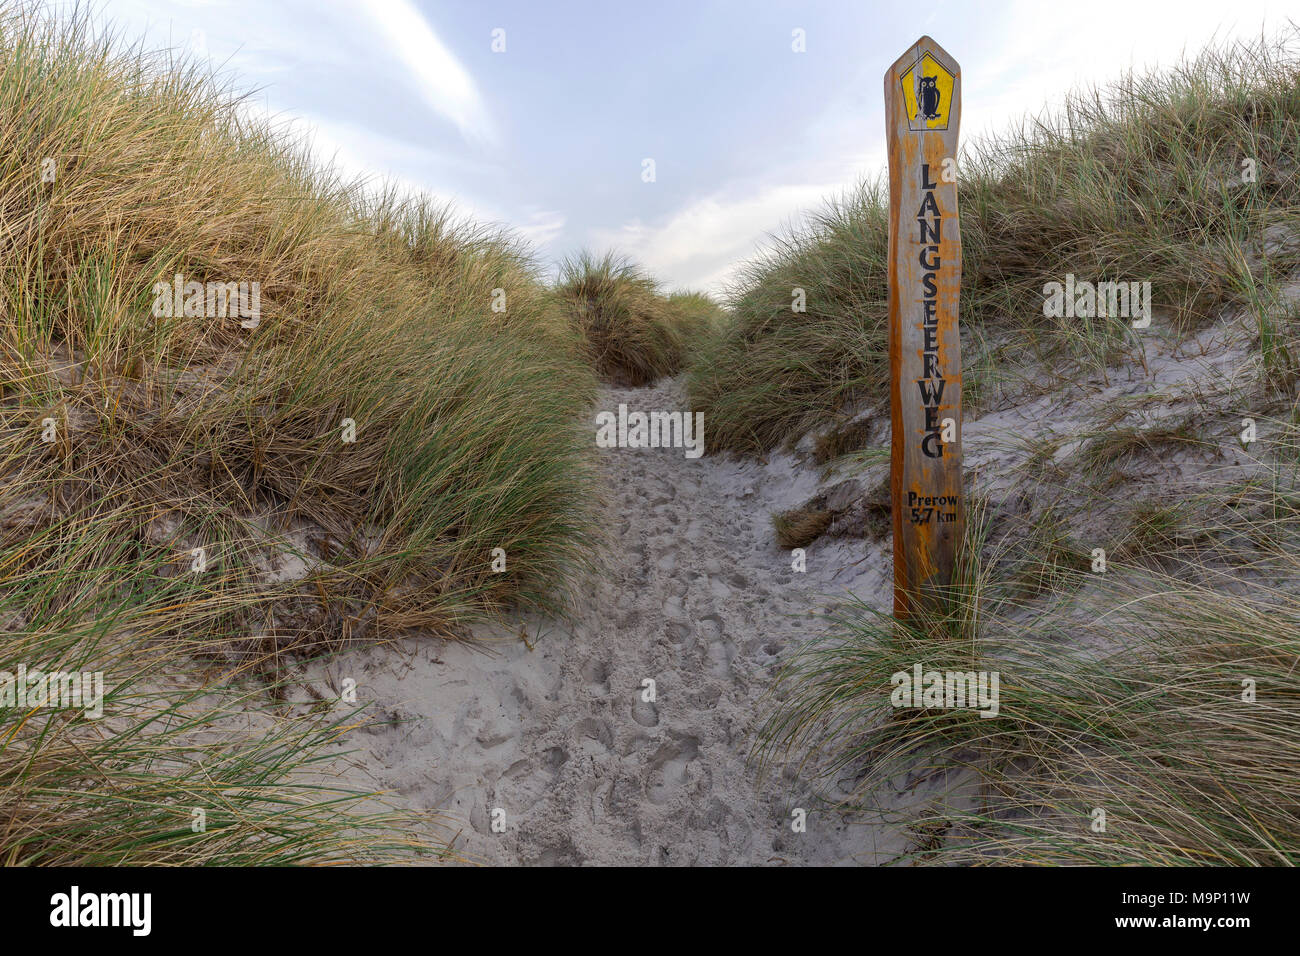 Sentier jusqu'à la plage, de l'Oyat, l'ammophile (Ammophila arenaria), plage ouest, Fischland-darss-Zingst, Western Banque D'Images